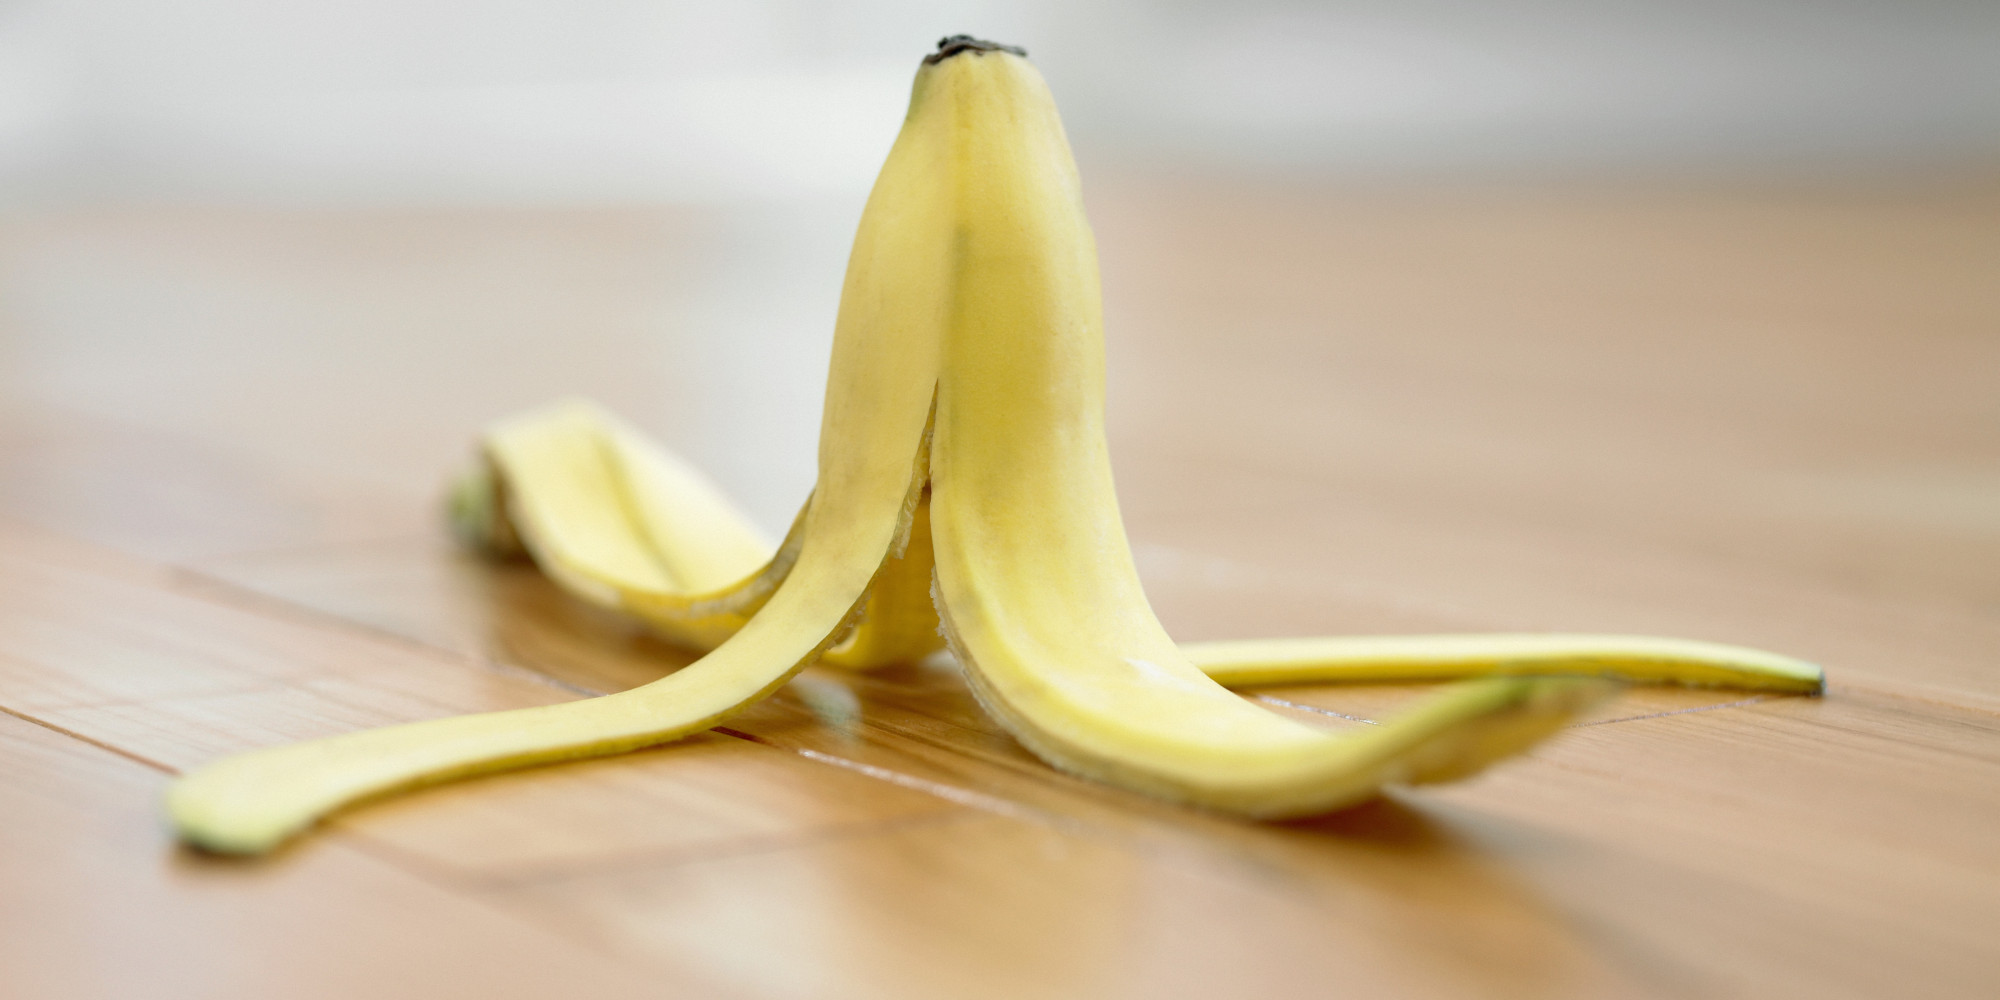 Can You Eat Banana Peels?